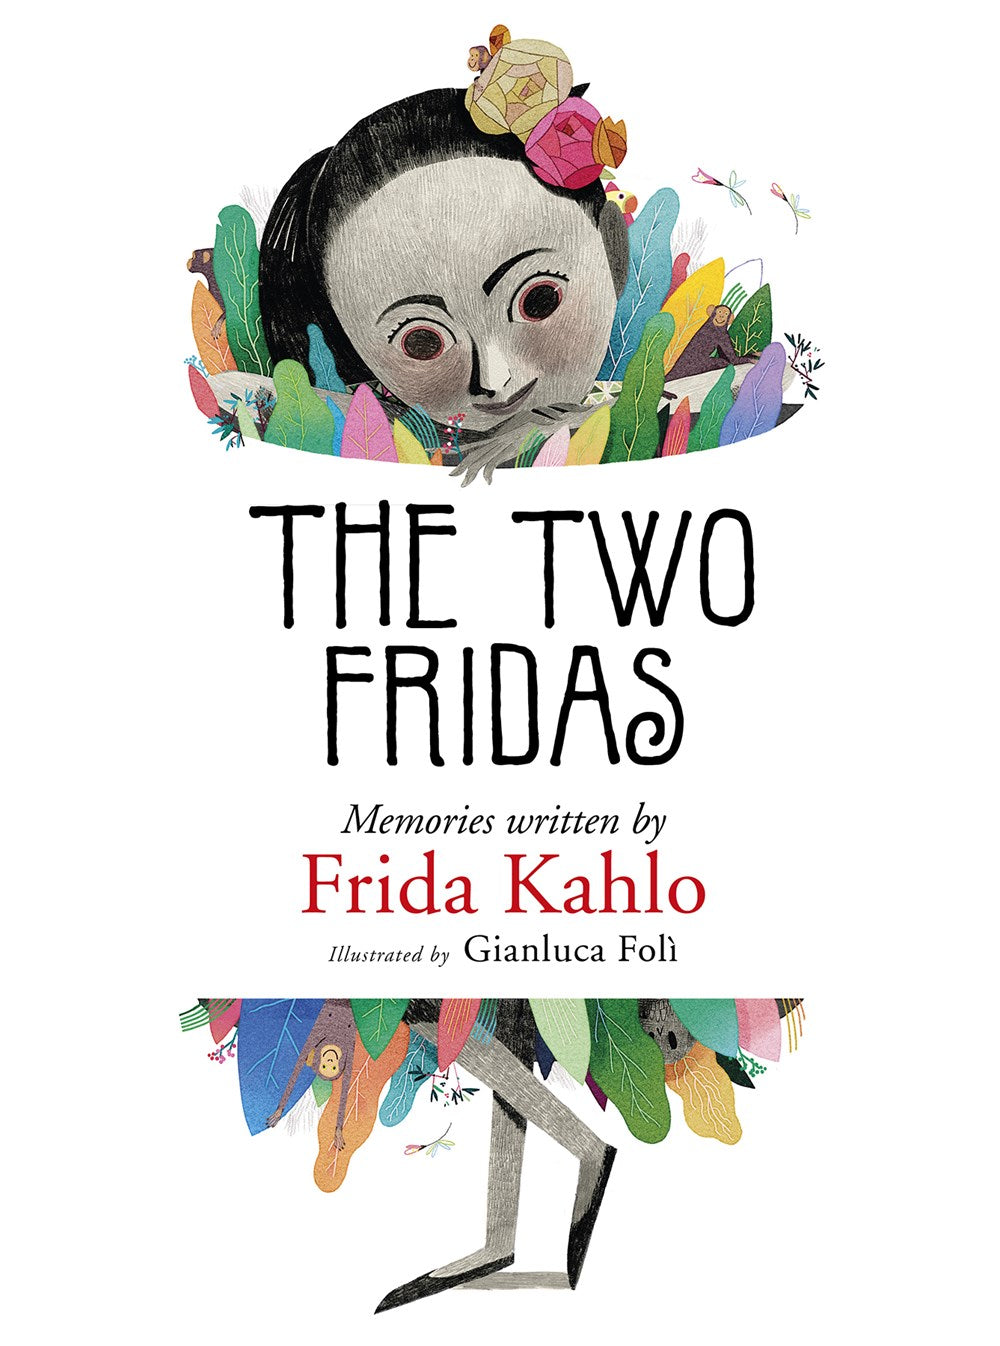 The two Fridas, Frida Kahlo